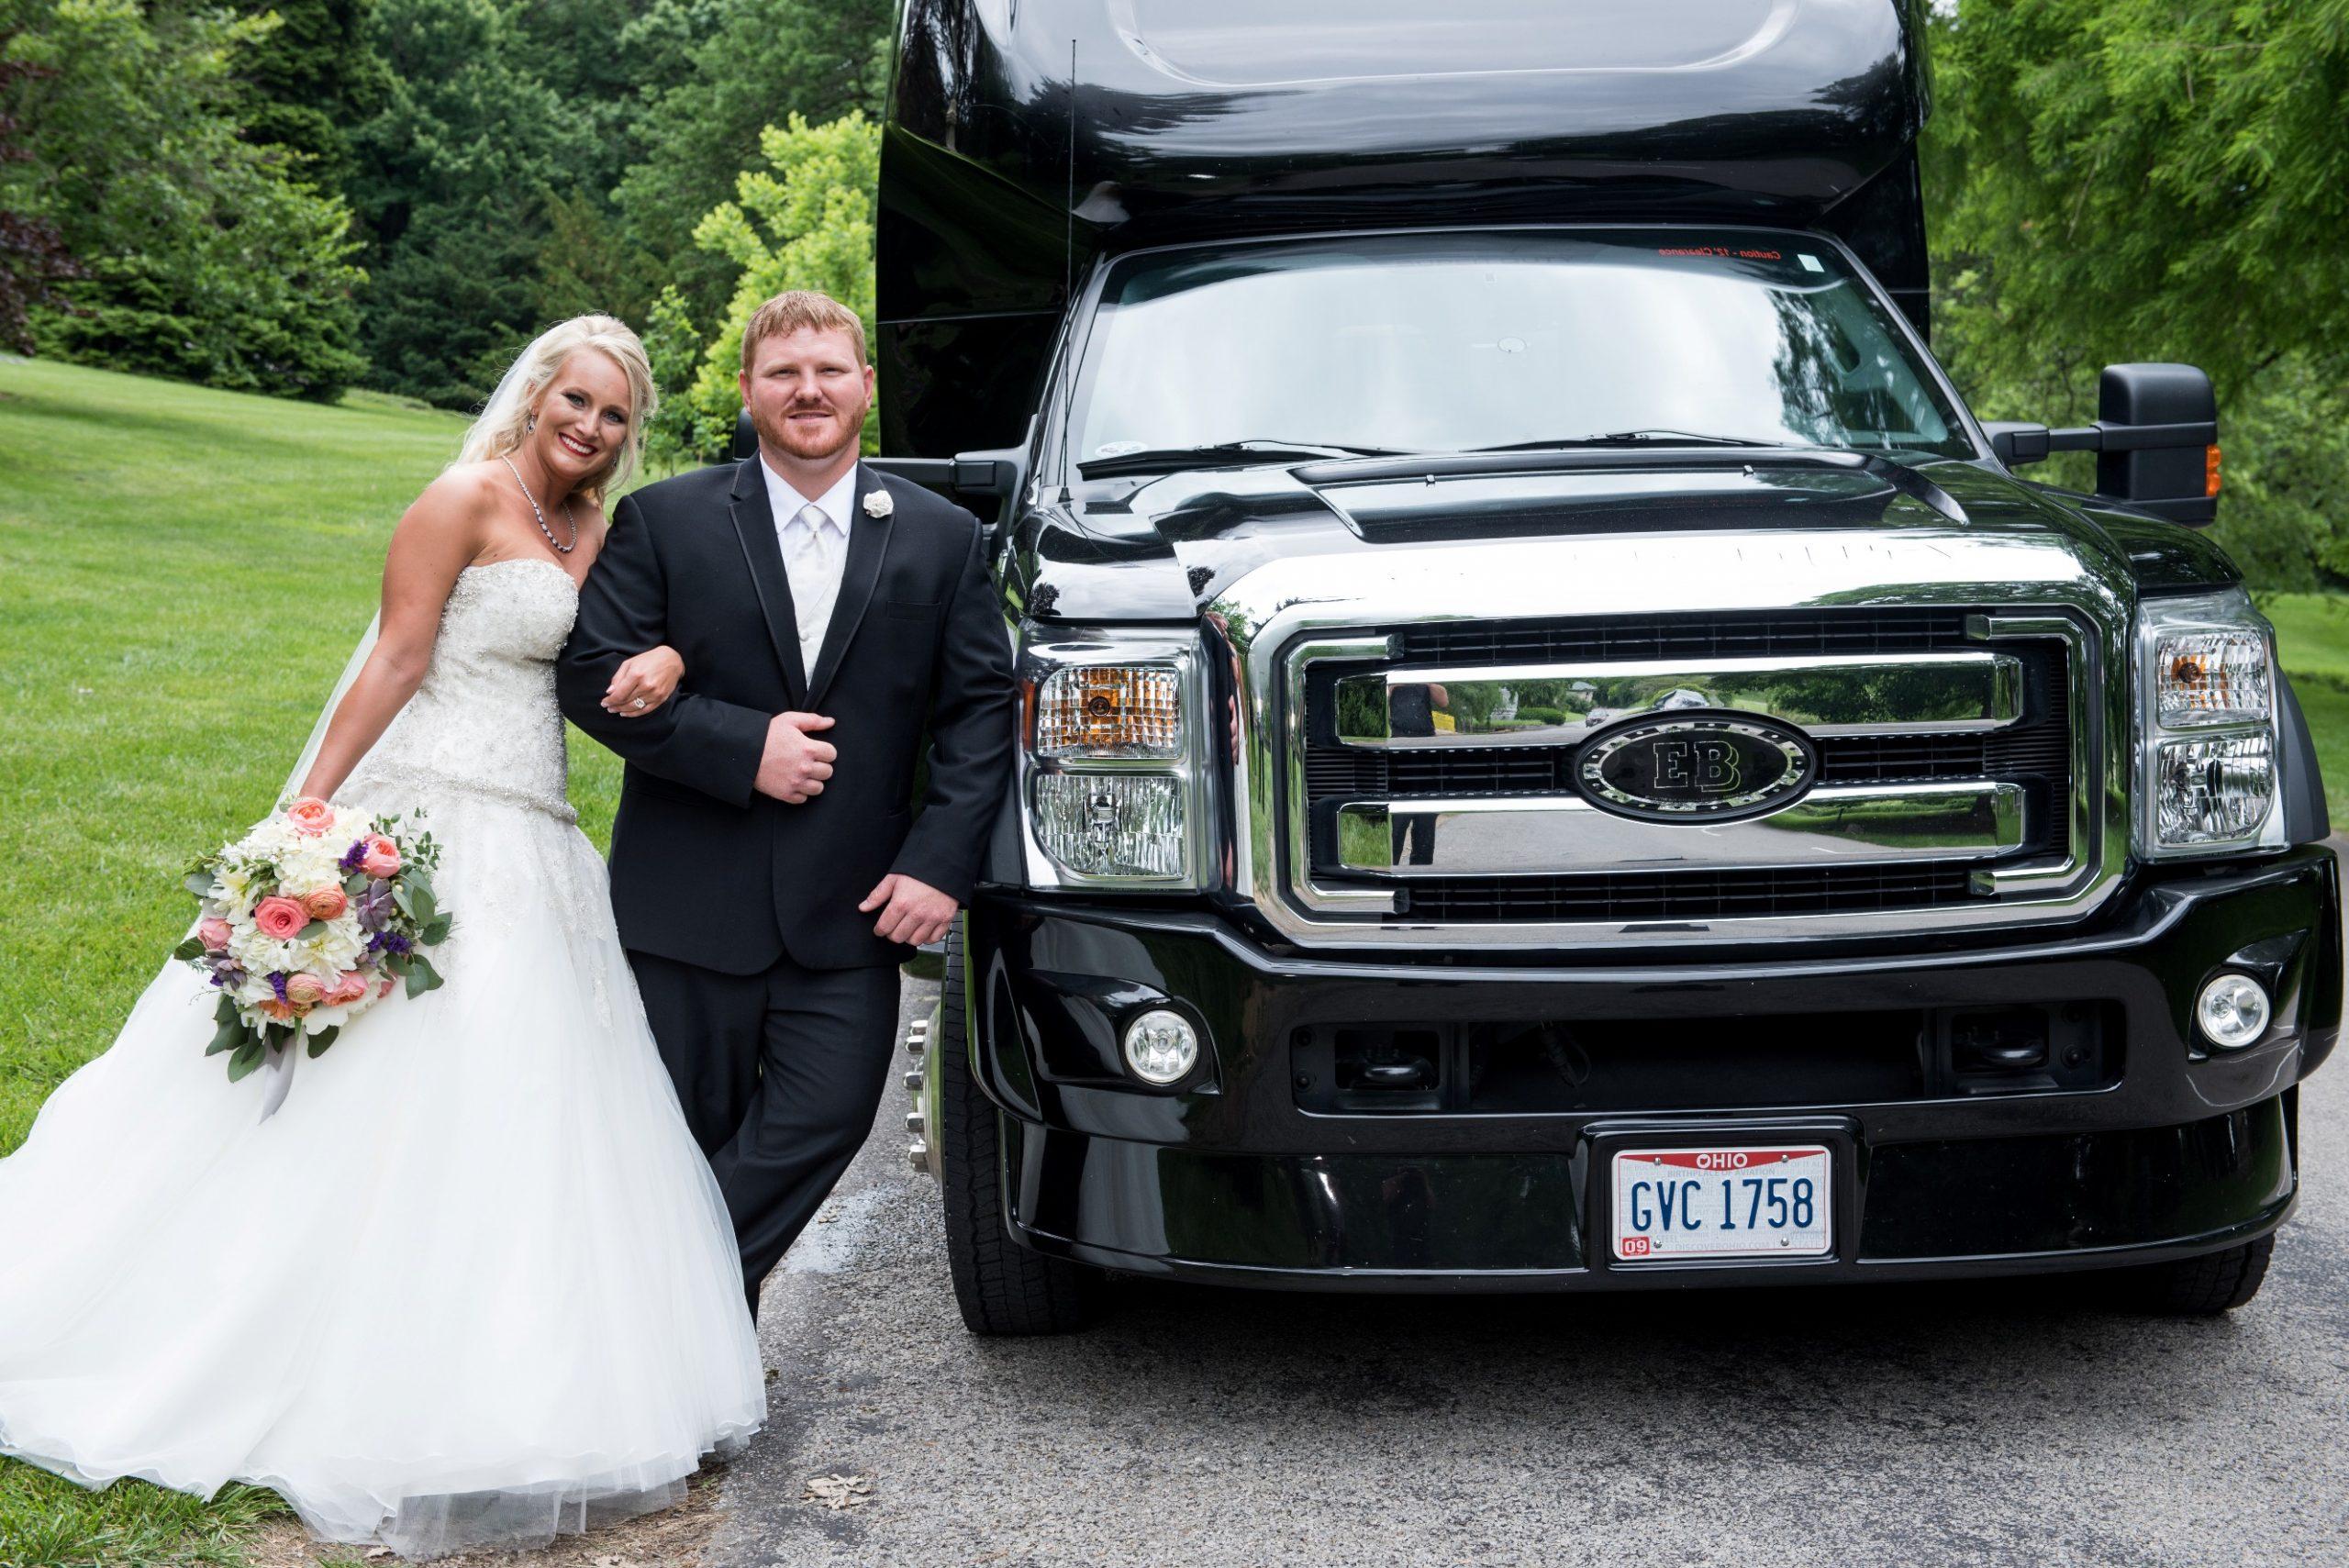 Wedding Motortoys Limo Party Bus Cincinnati